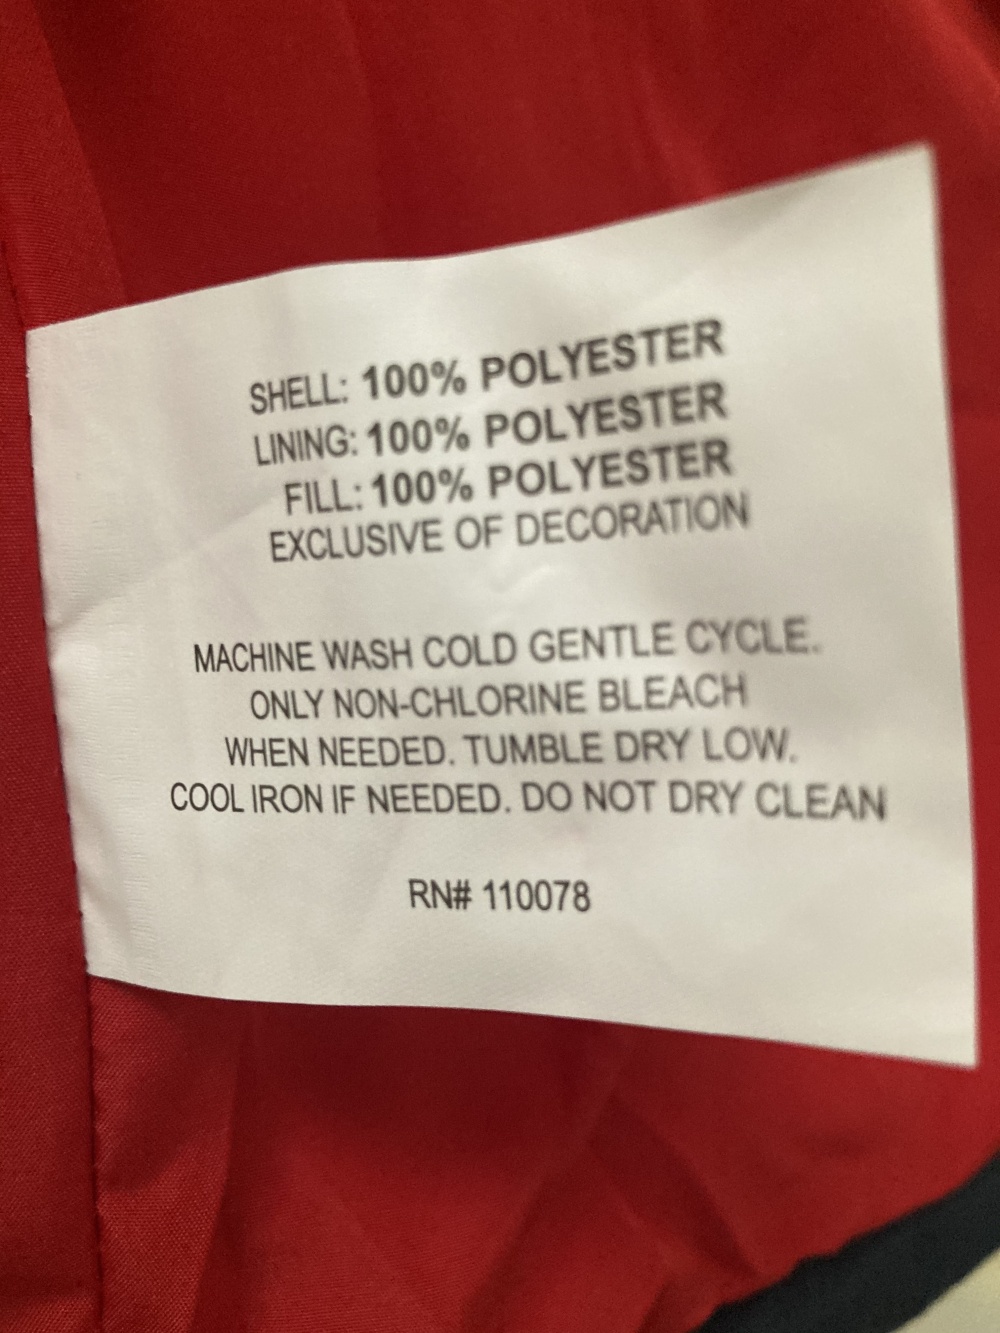 Куртка « U.S. Polo Assn», размер М (10-12)